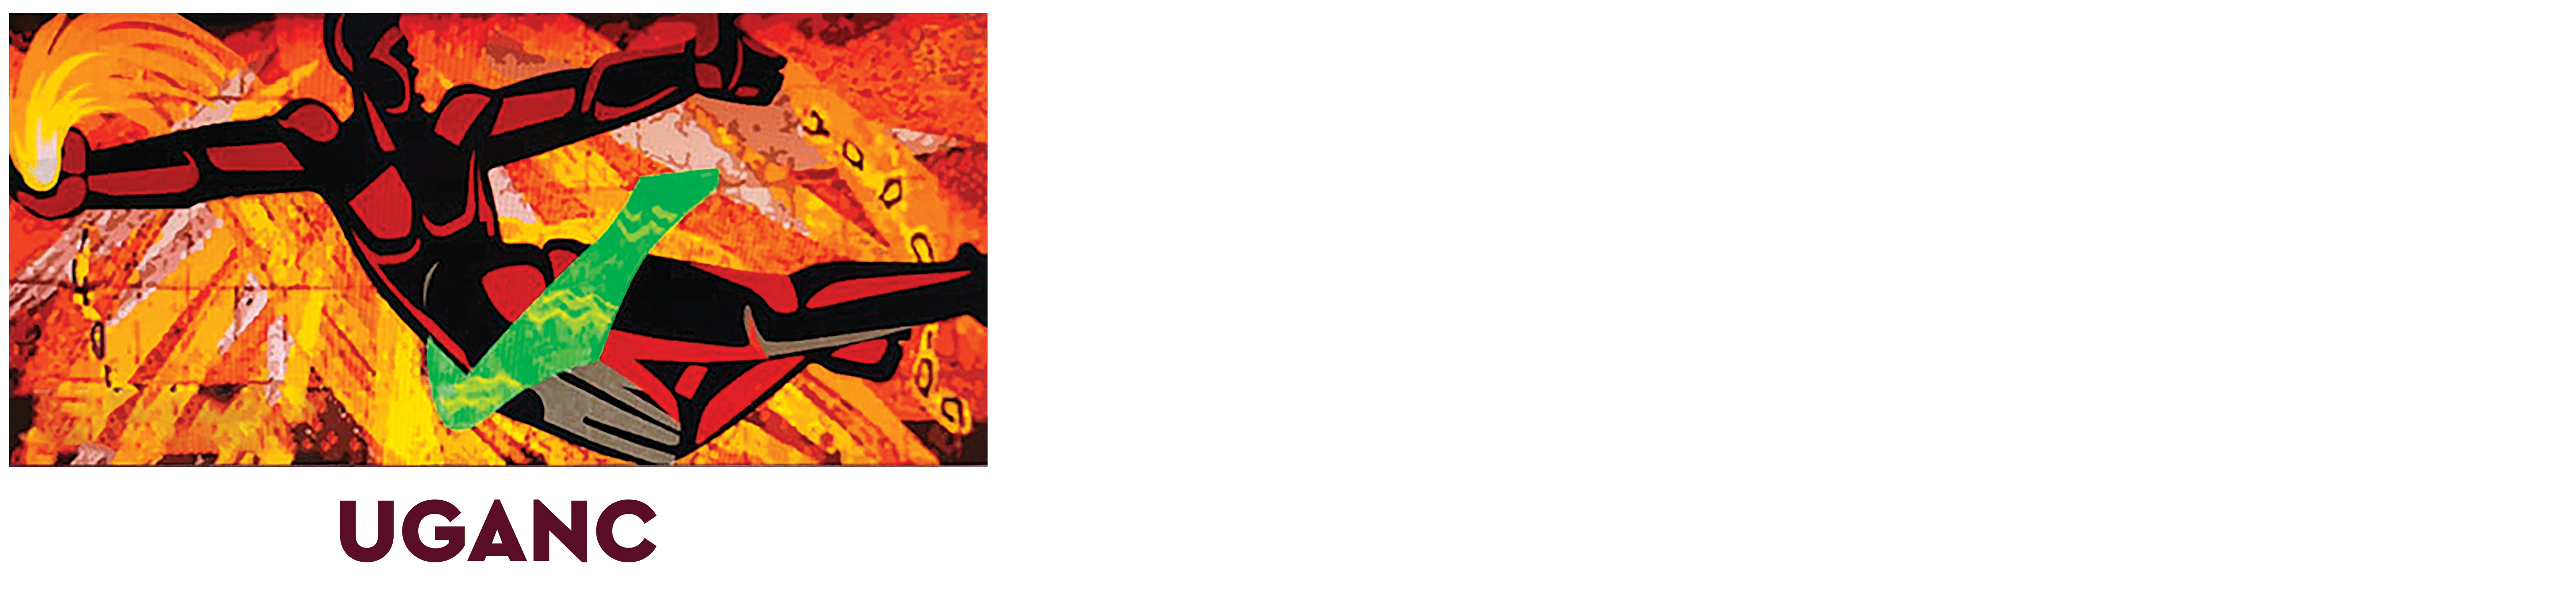 Université Gamal Abdel Nasser de Conakry